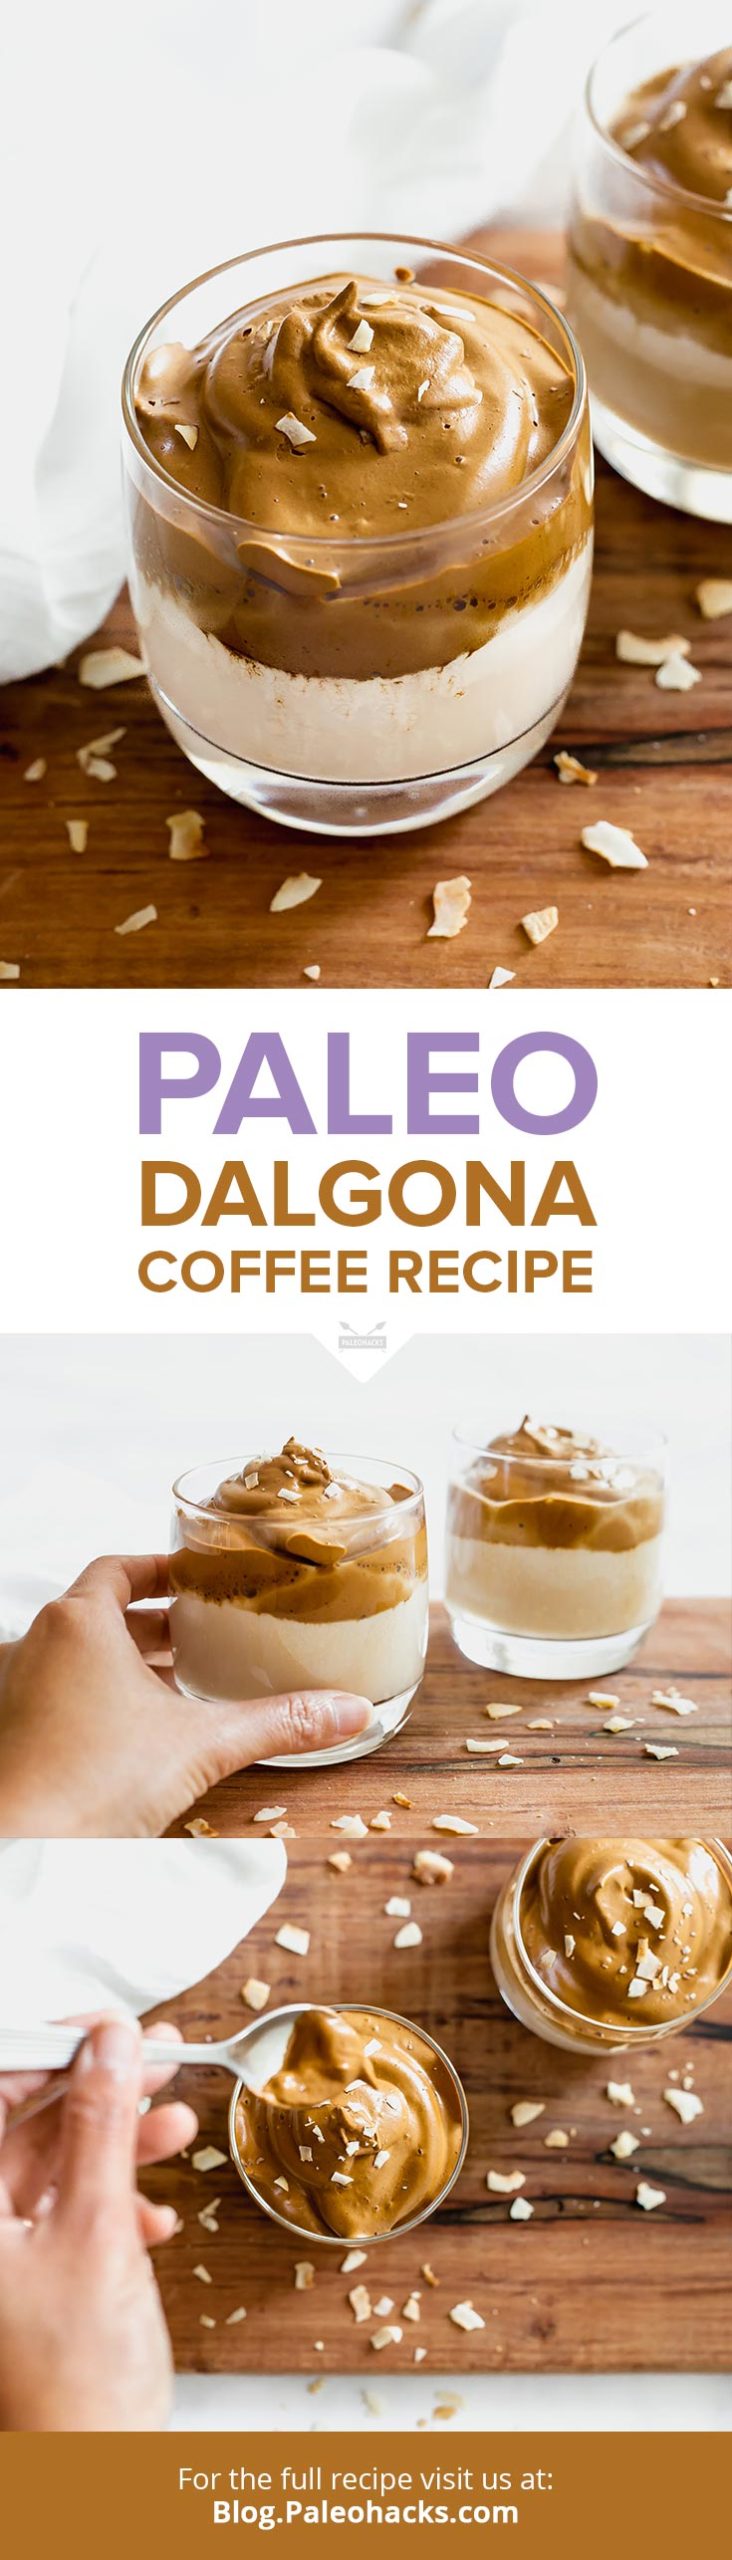 این قهوه پالئو دالگونا را تنها با 3 ماده و شیر بادام یا جایگزین لبنی مورد علاقه خود در چند دقیقه مخلوط کنید.